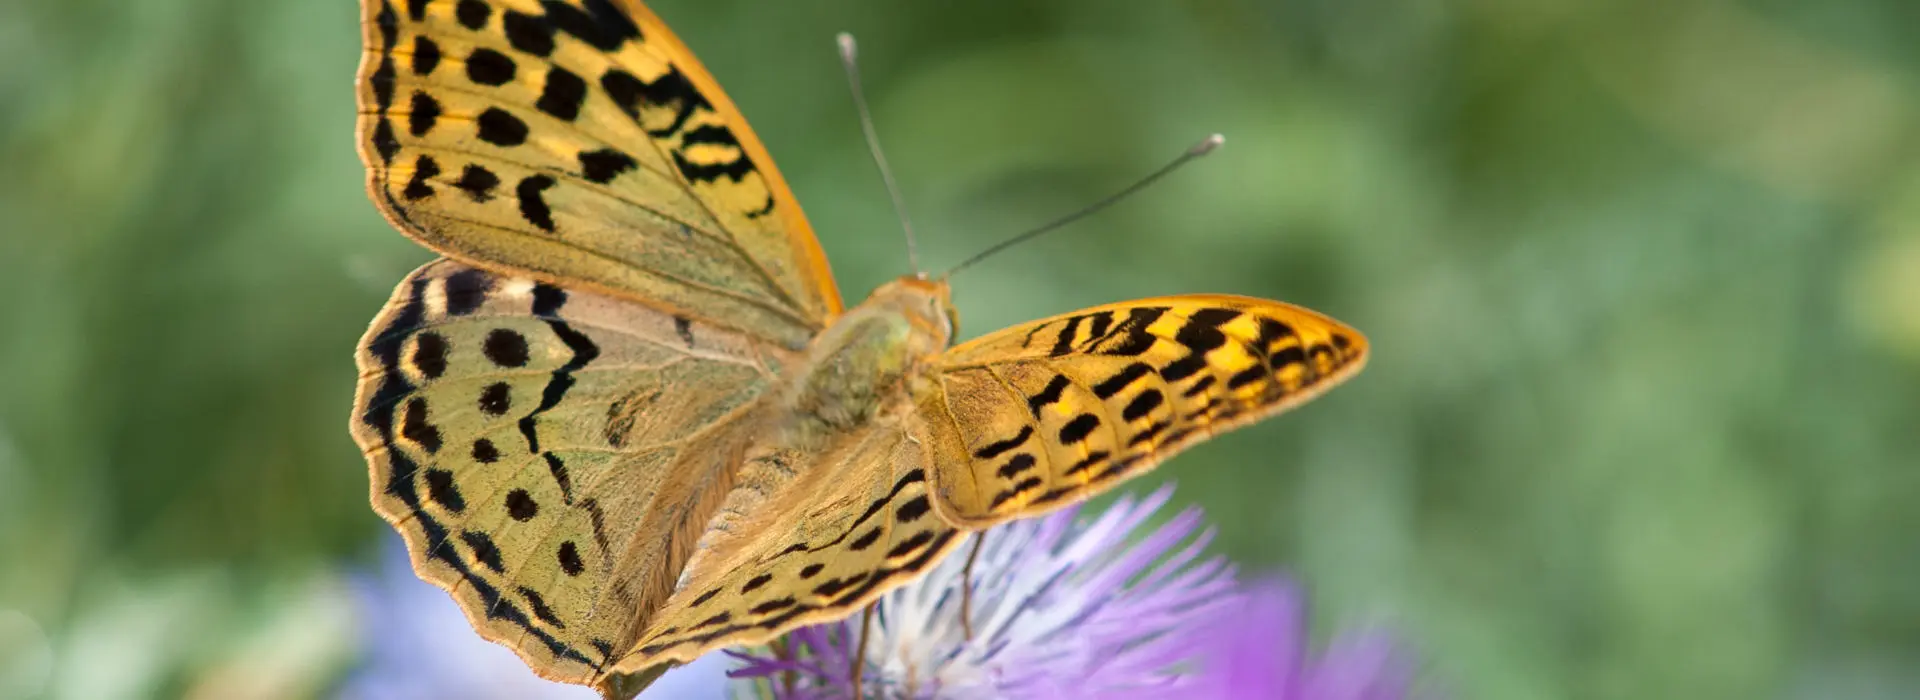 Botanical Park- Gardens Of Crete: Butterflies